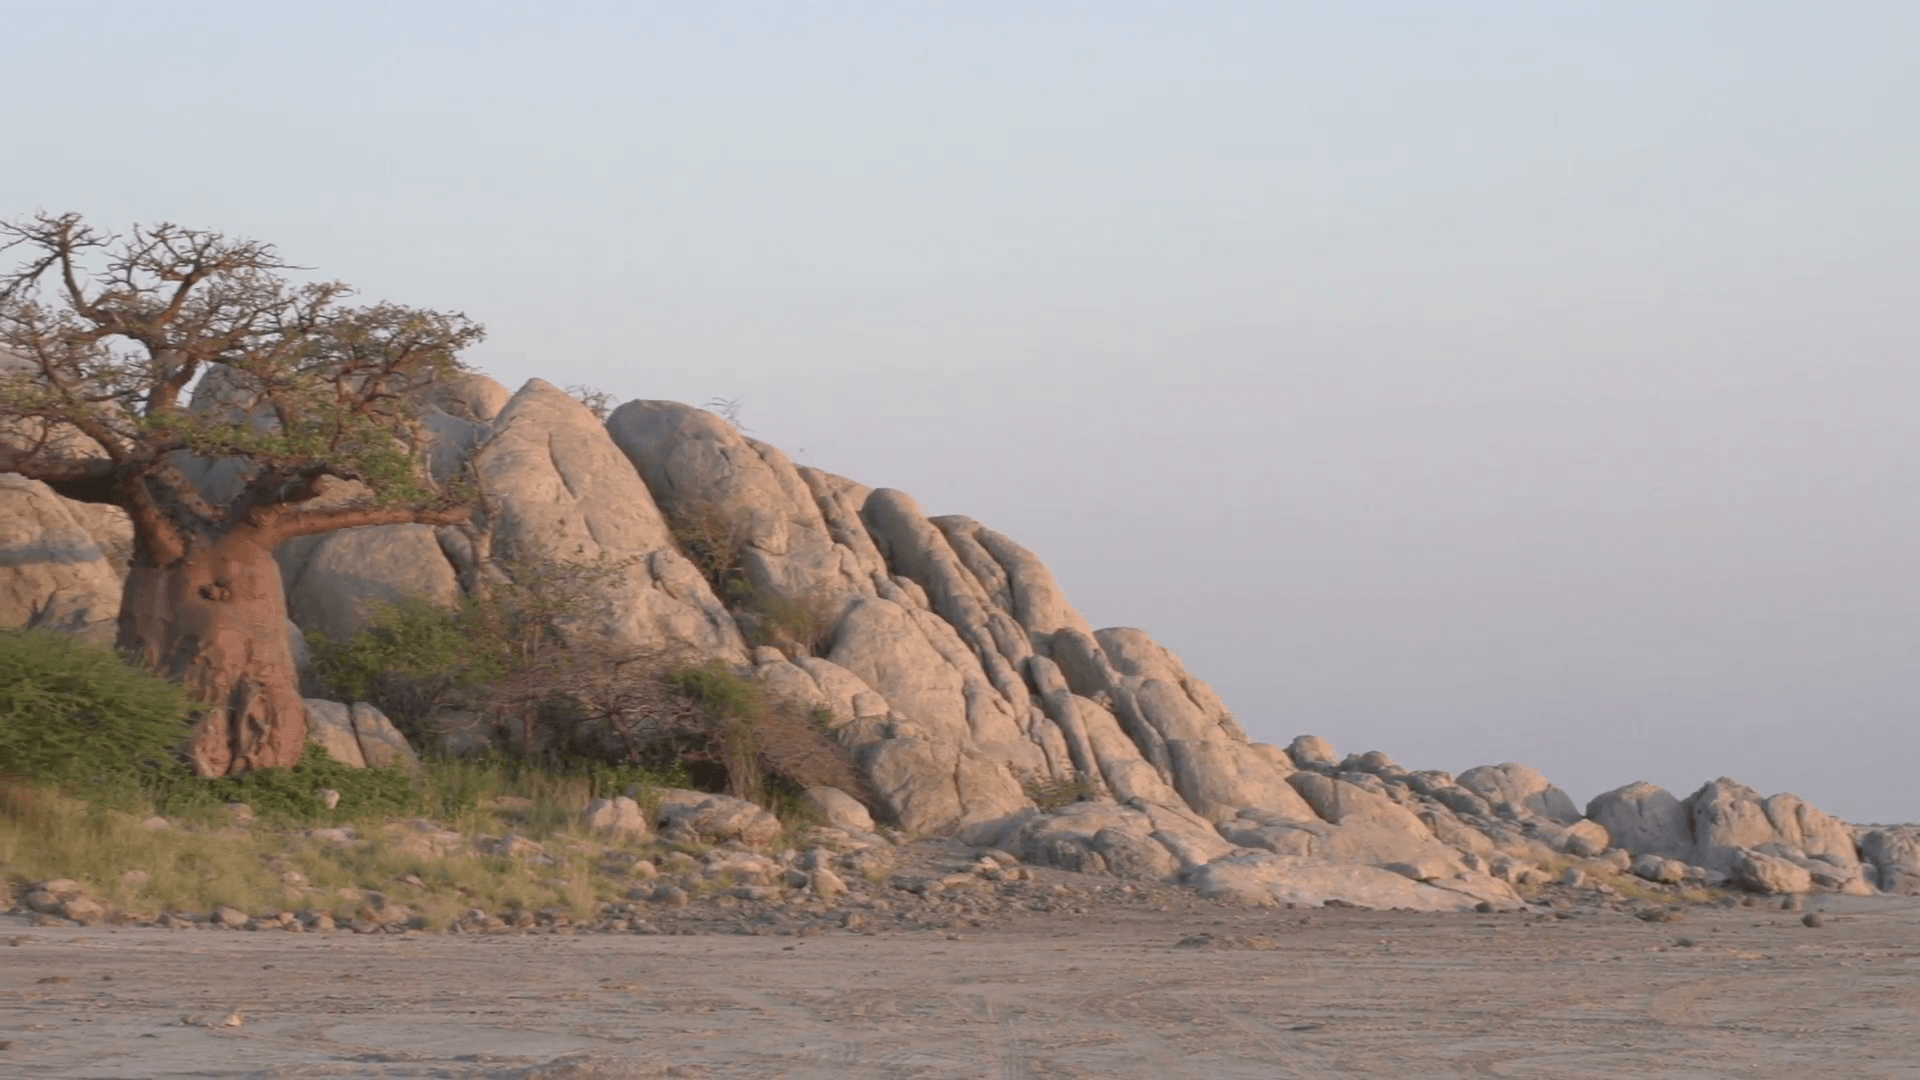 Panning shot of Makgadikgadi Pans and the edge of Kubu Island